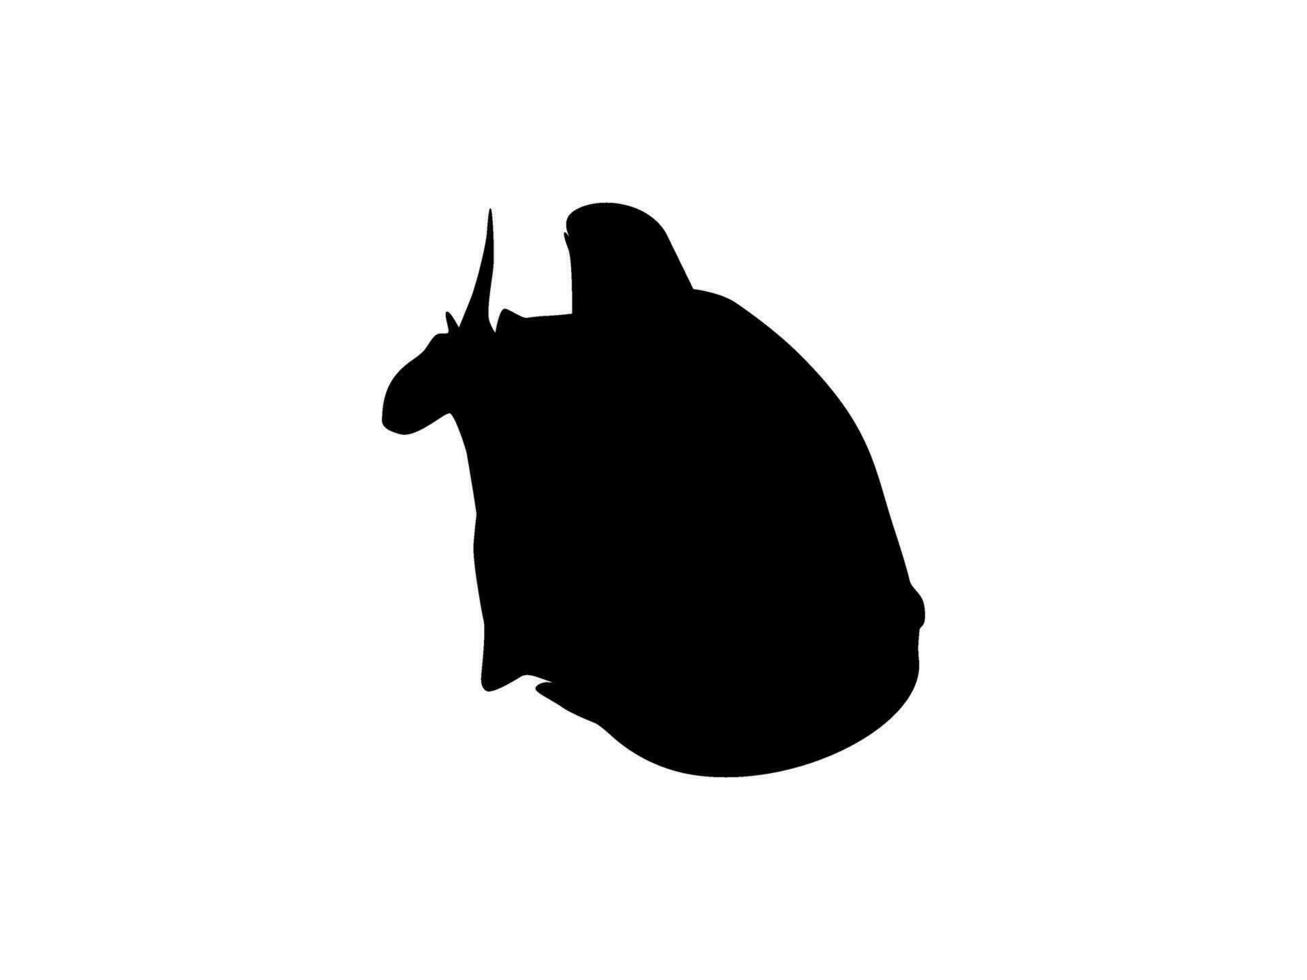 piranha peixe silhueta, pode usar para logotipo grama, local na rede Internet, arte ilustração, pictograma, ícone ou gráfico Projeto elemento. vetor ilustração